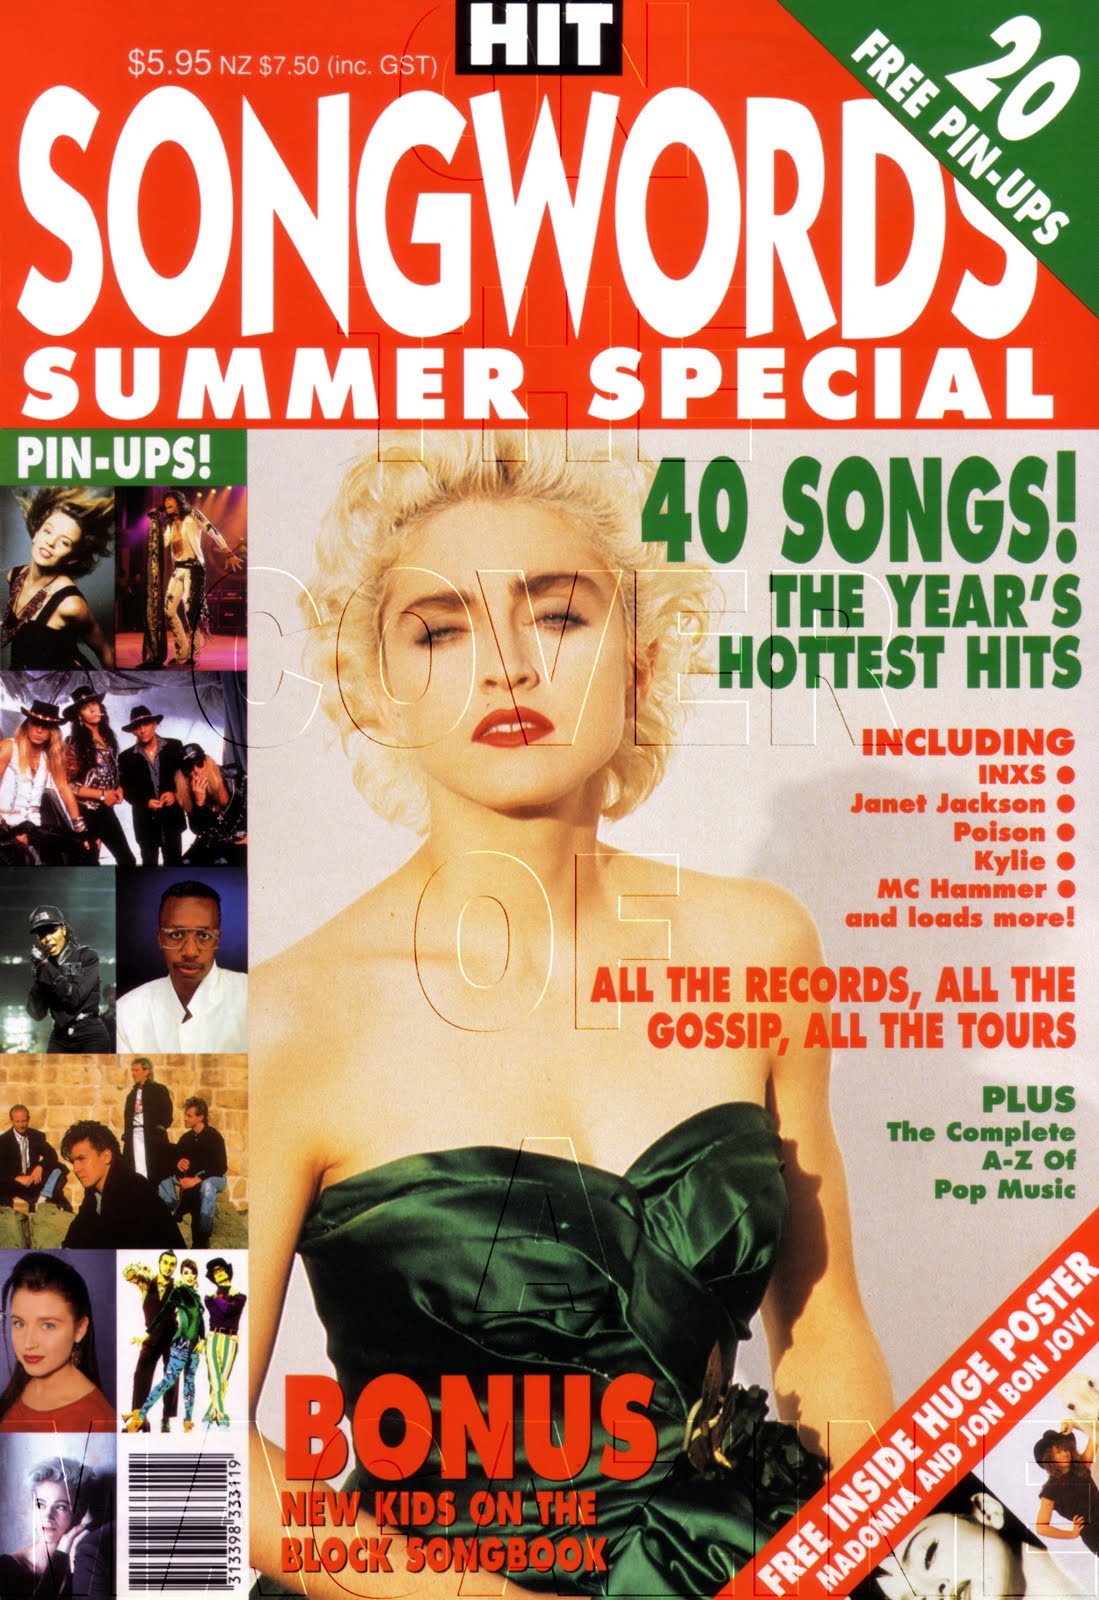 http://1.bp.blogspot.com/_eA7ZafYKvfU/THCX3kJ8aEI/AAAAAAAADzY/vVFaGMFW5V0/s1600/Australia+Hit+Songwords+1989+copy.jpg